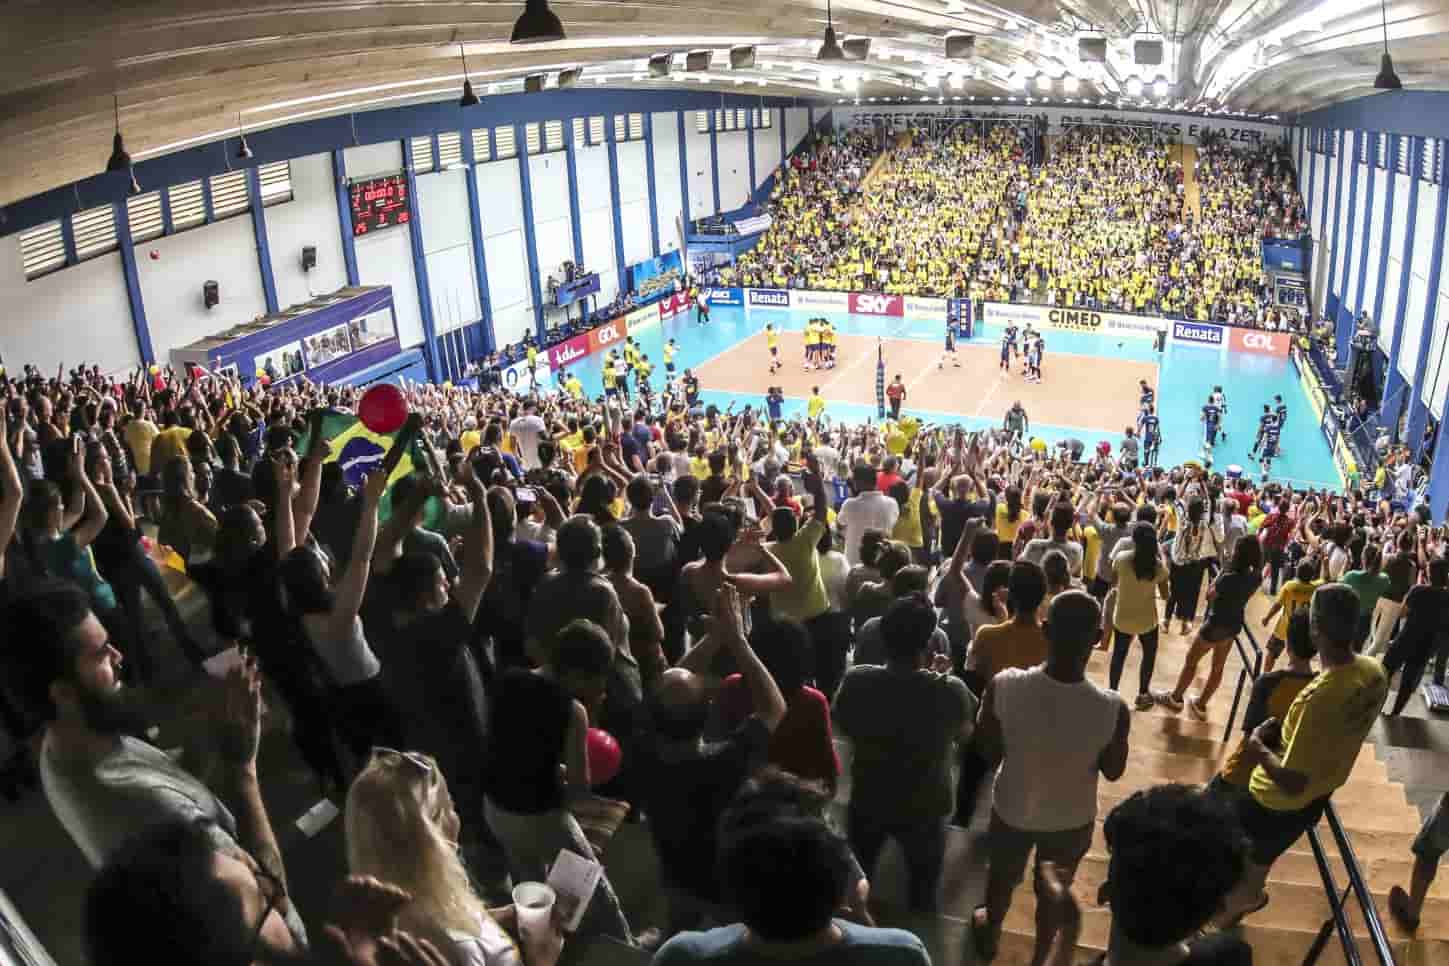 Natal sedia Campeonato Brasileiro Interclubes Sub-17 de vôlei, vôlei